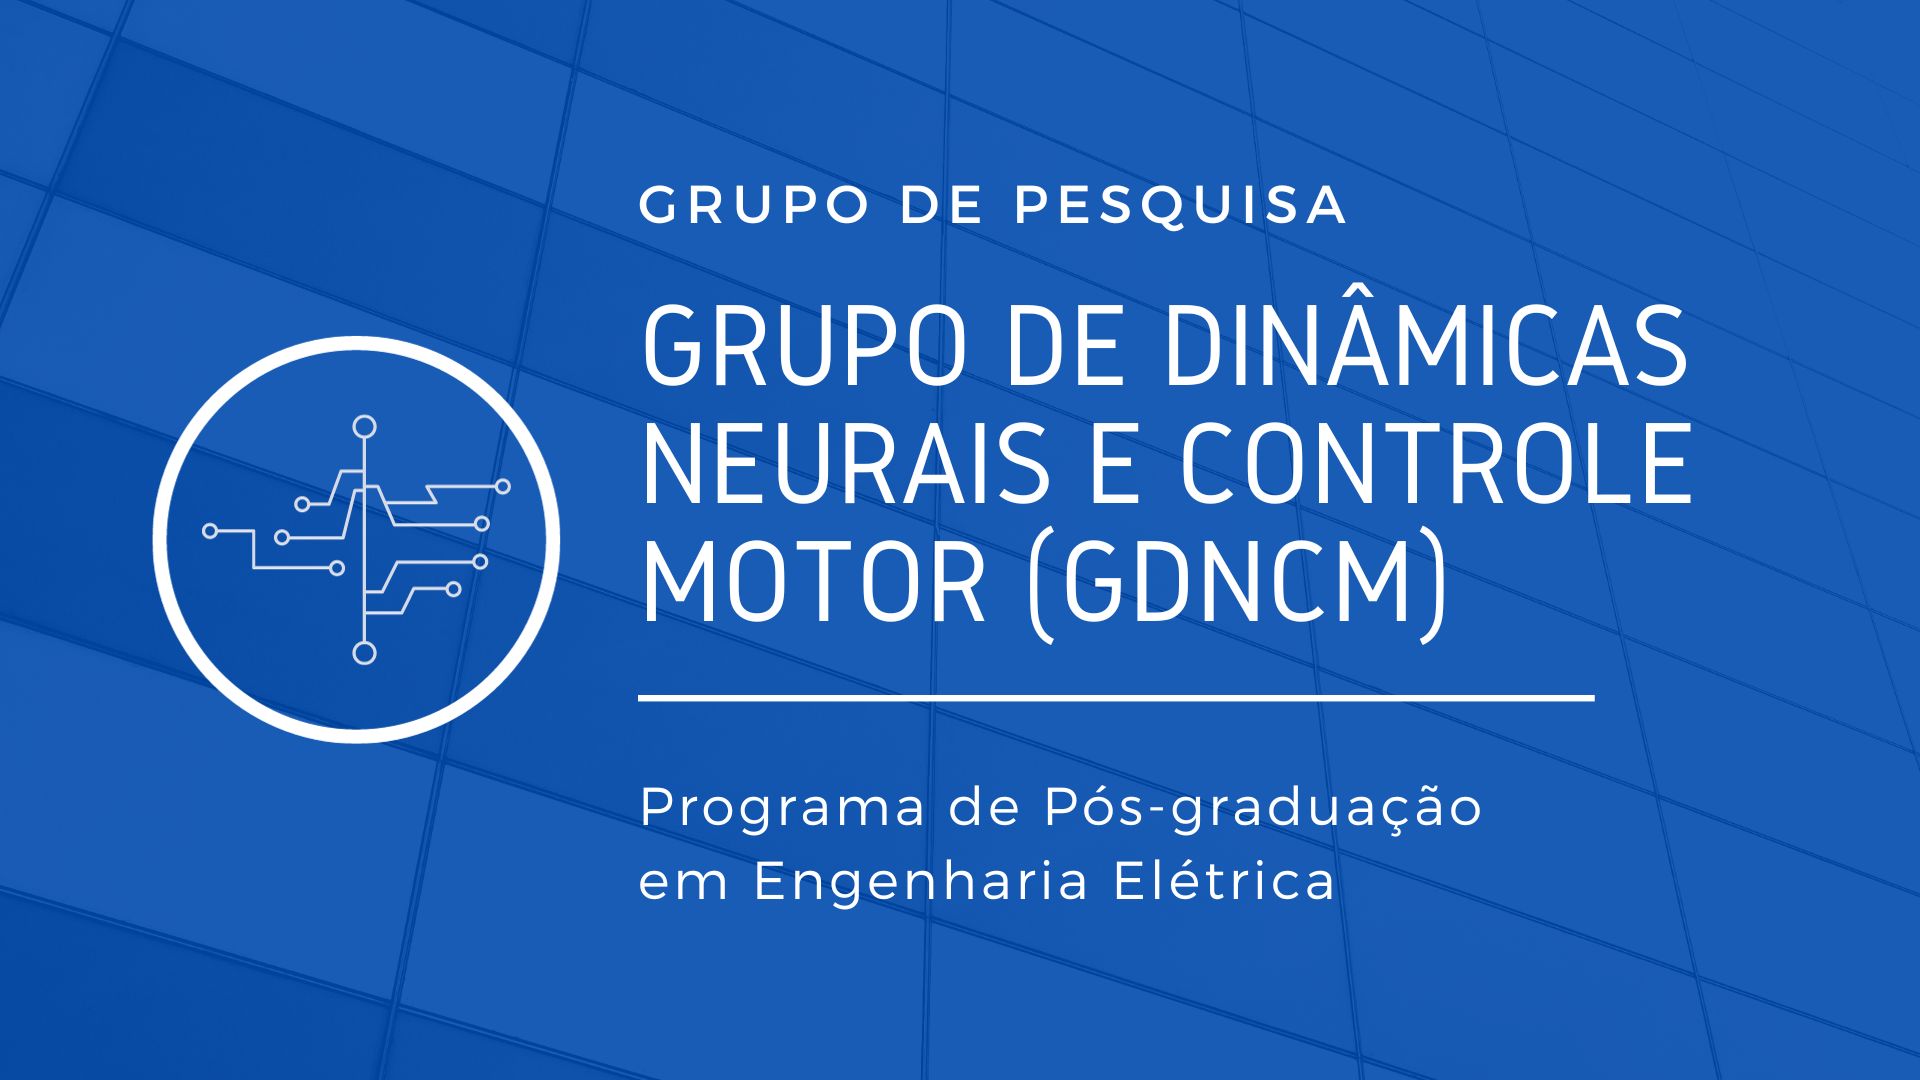 Grupo de Dinâmicas Neurais e Controle Motor (GDNCM)